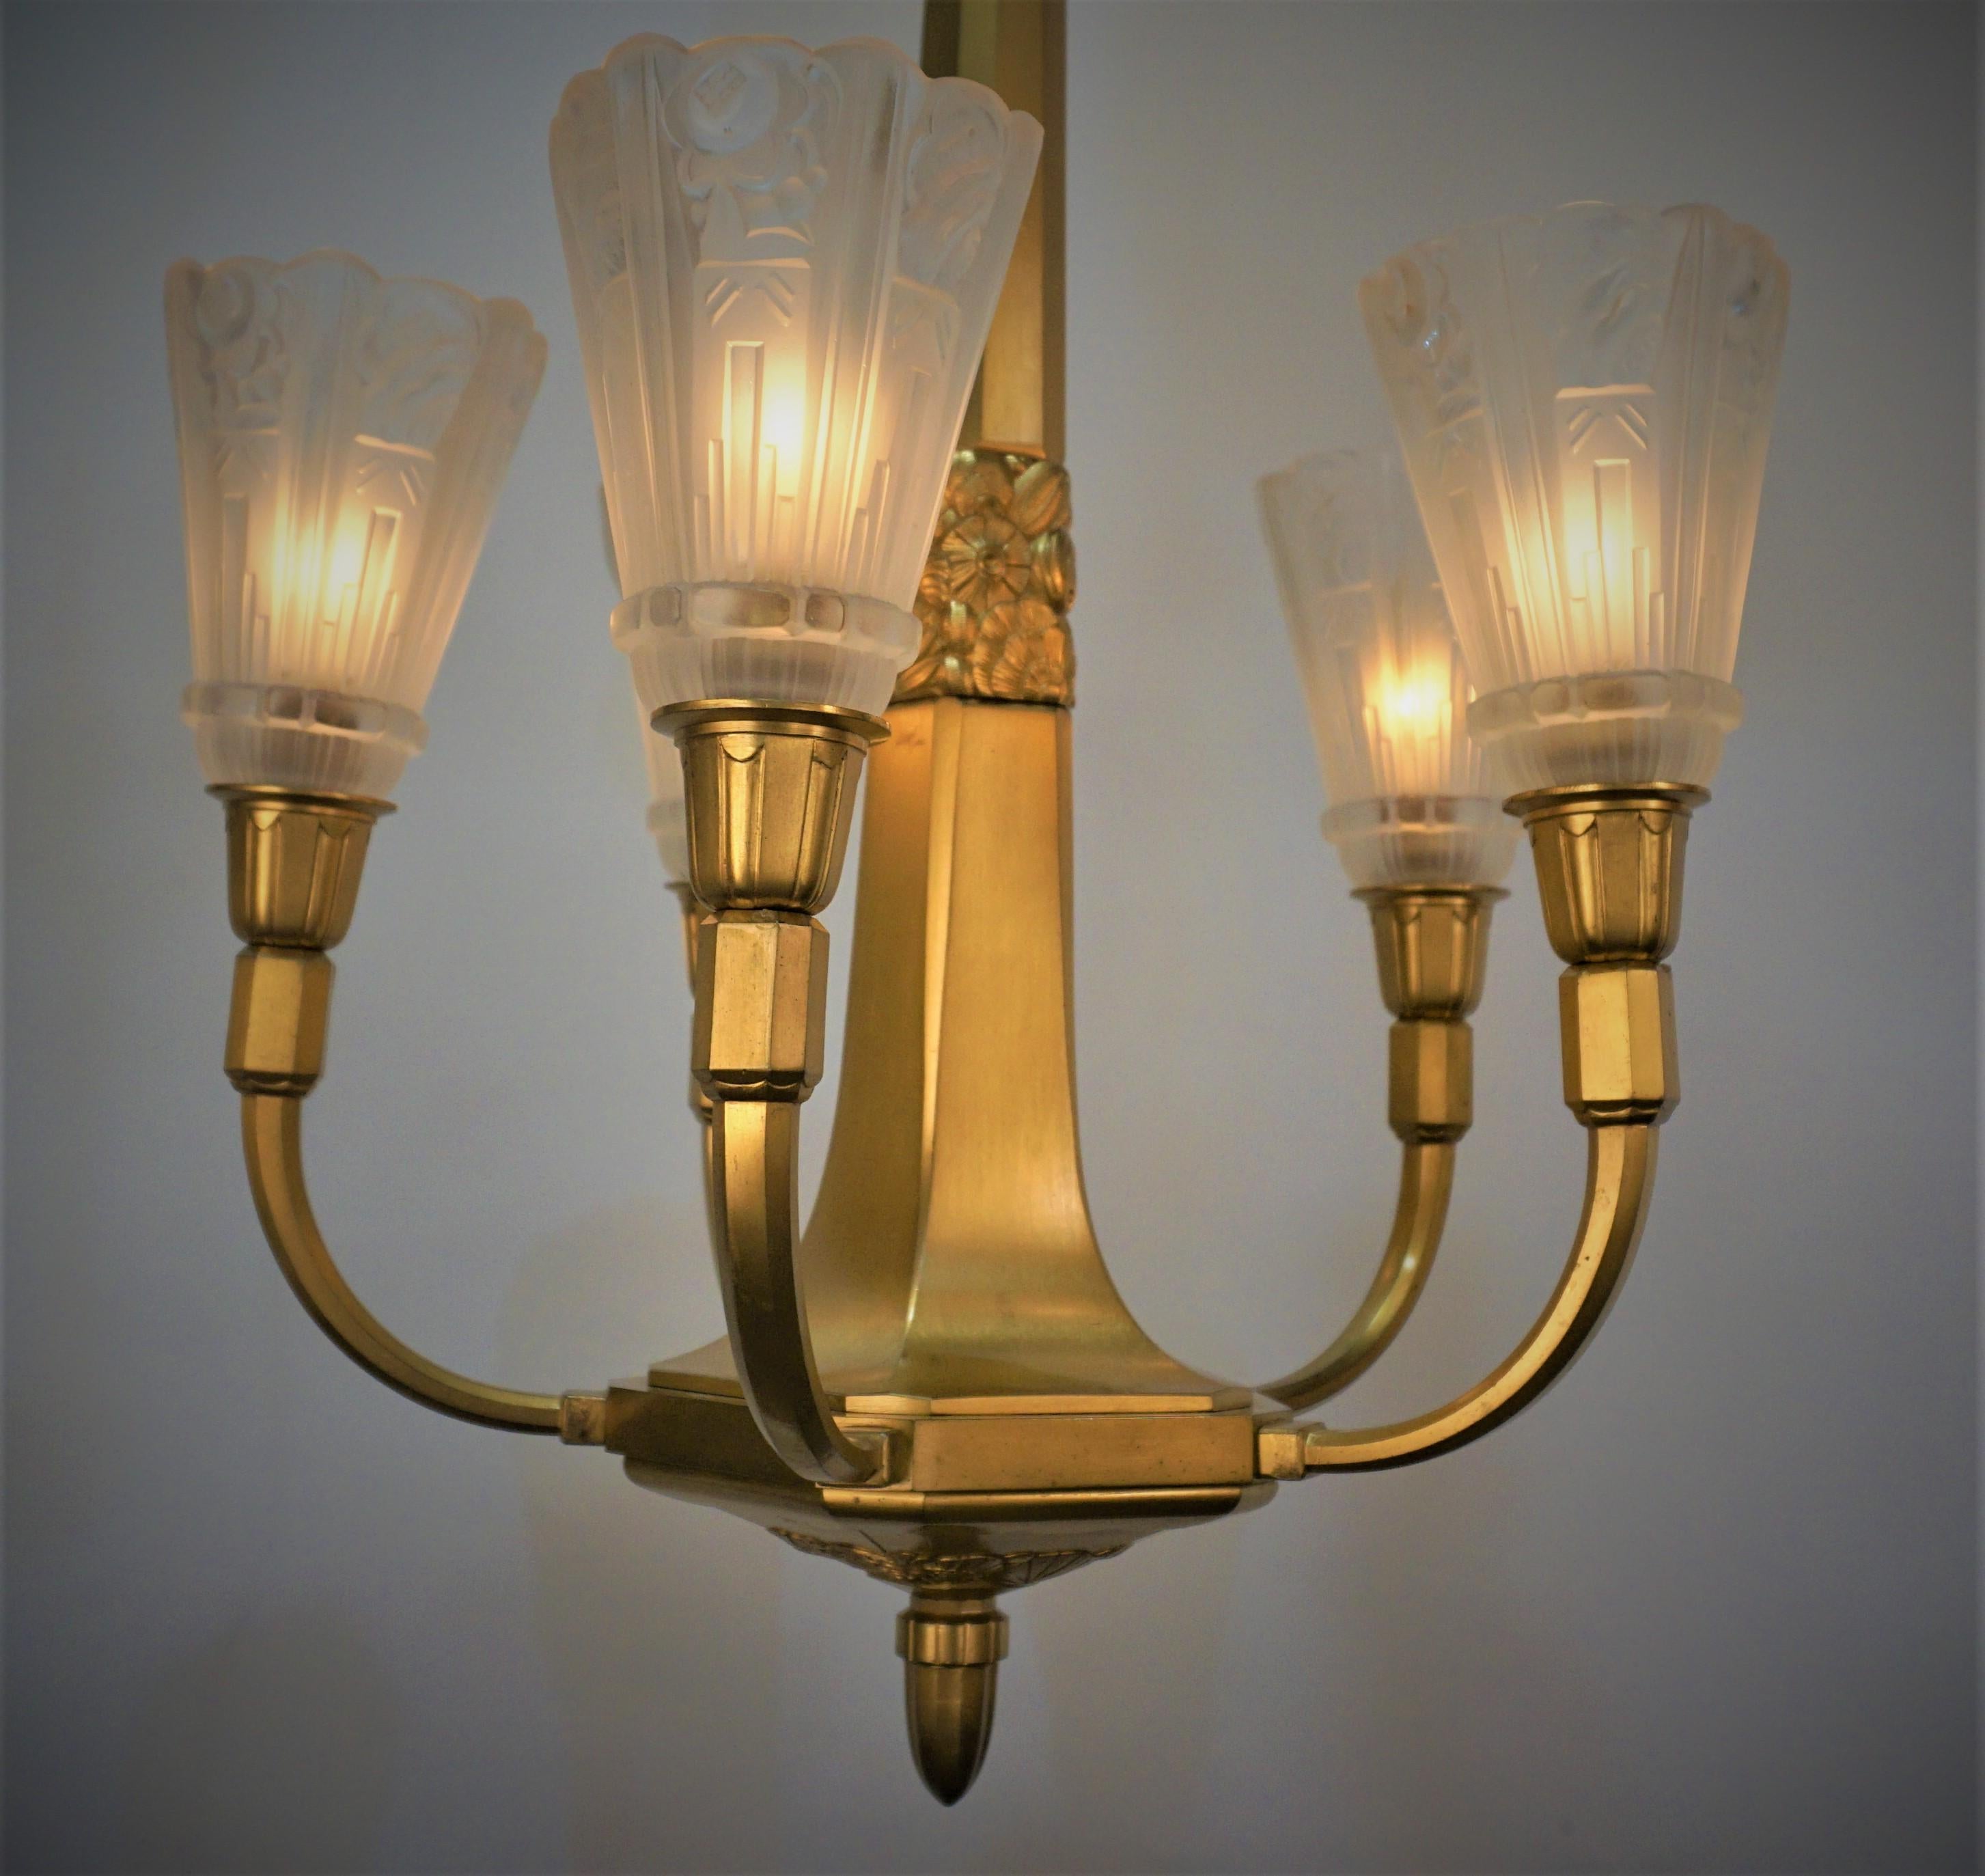 Superbe lustre Art Déco français à cinq lumières en verre givré clair, signé par J Robert. Superbe cadre en bronze doré.
Recâblage professionnel et prêt à être installé.